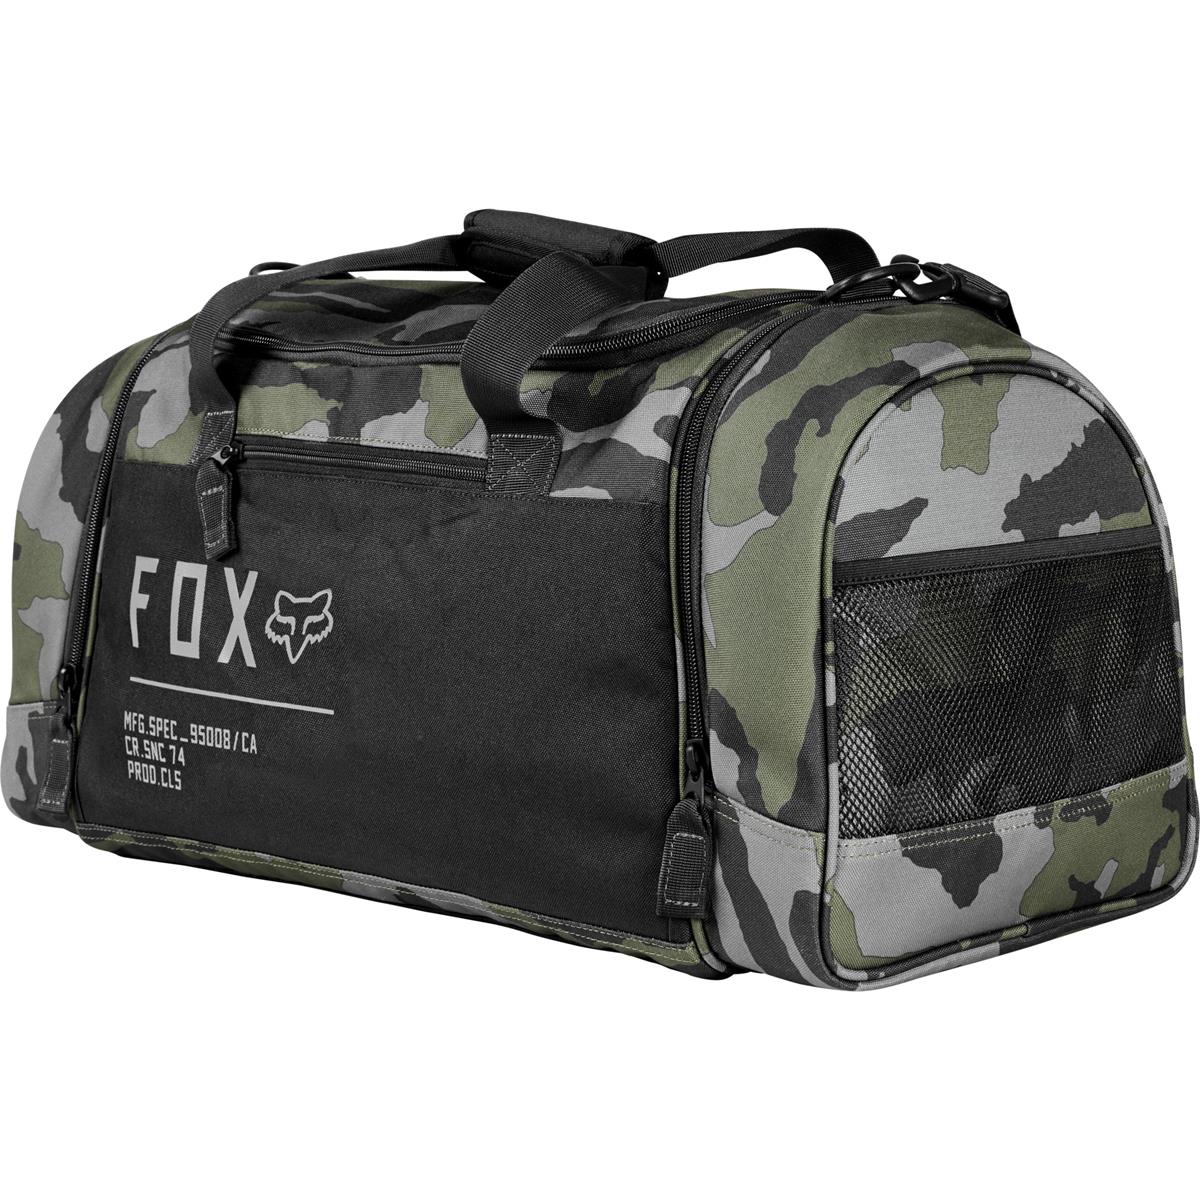 Fox Gear Bag 180 Duffle Camo